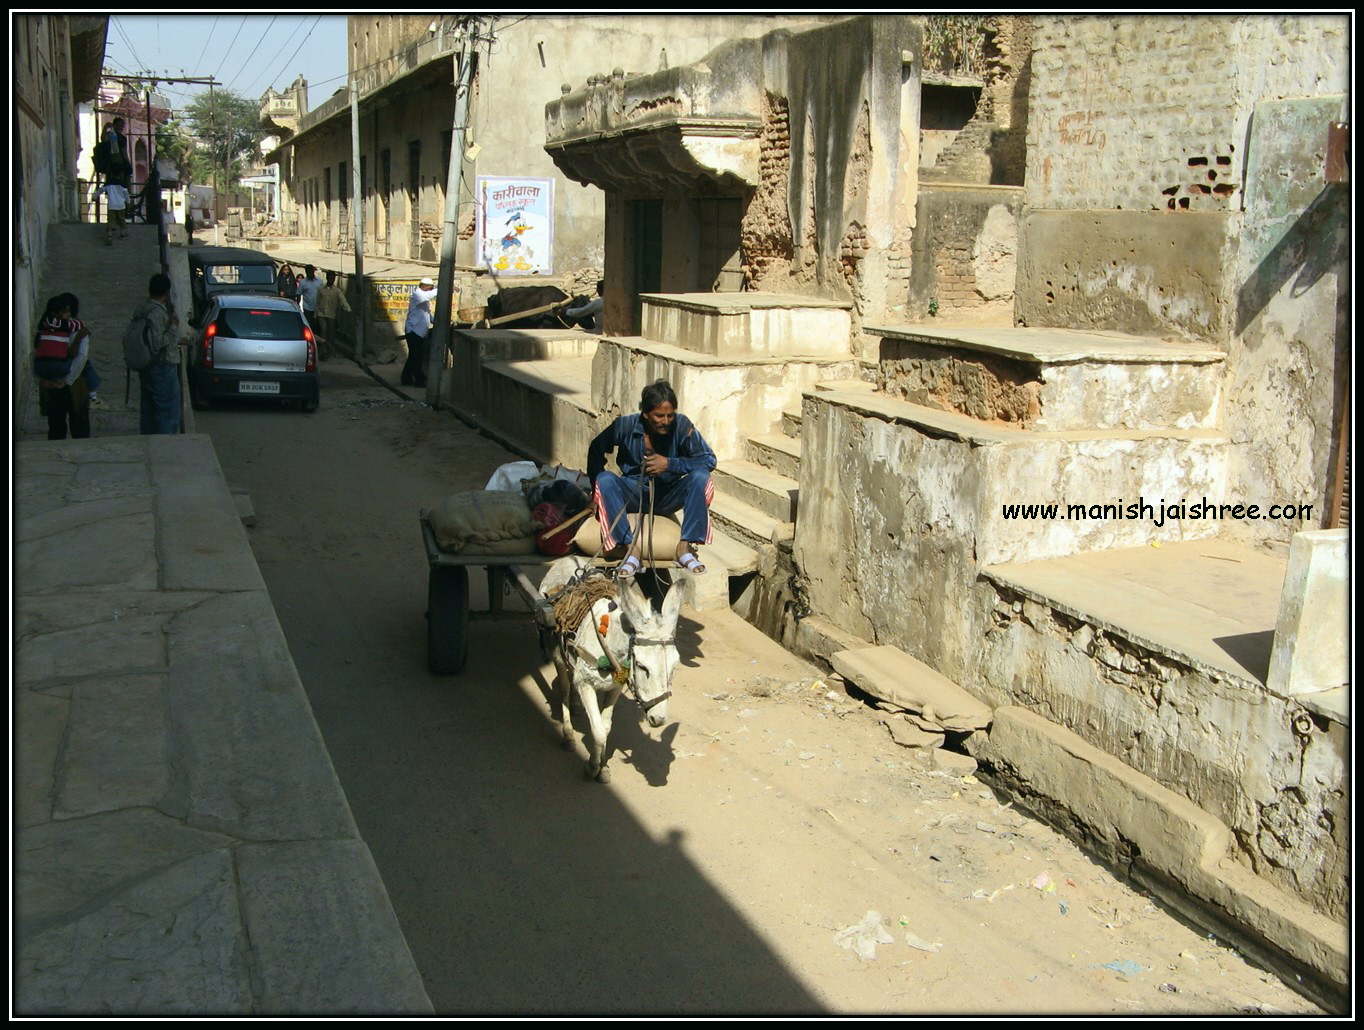 Narrow lanes and donkey carts